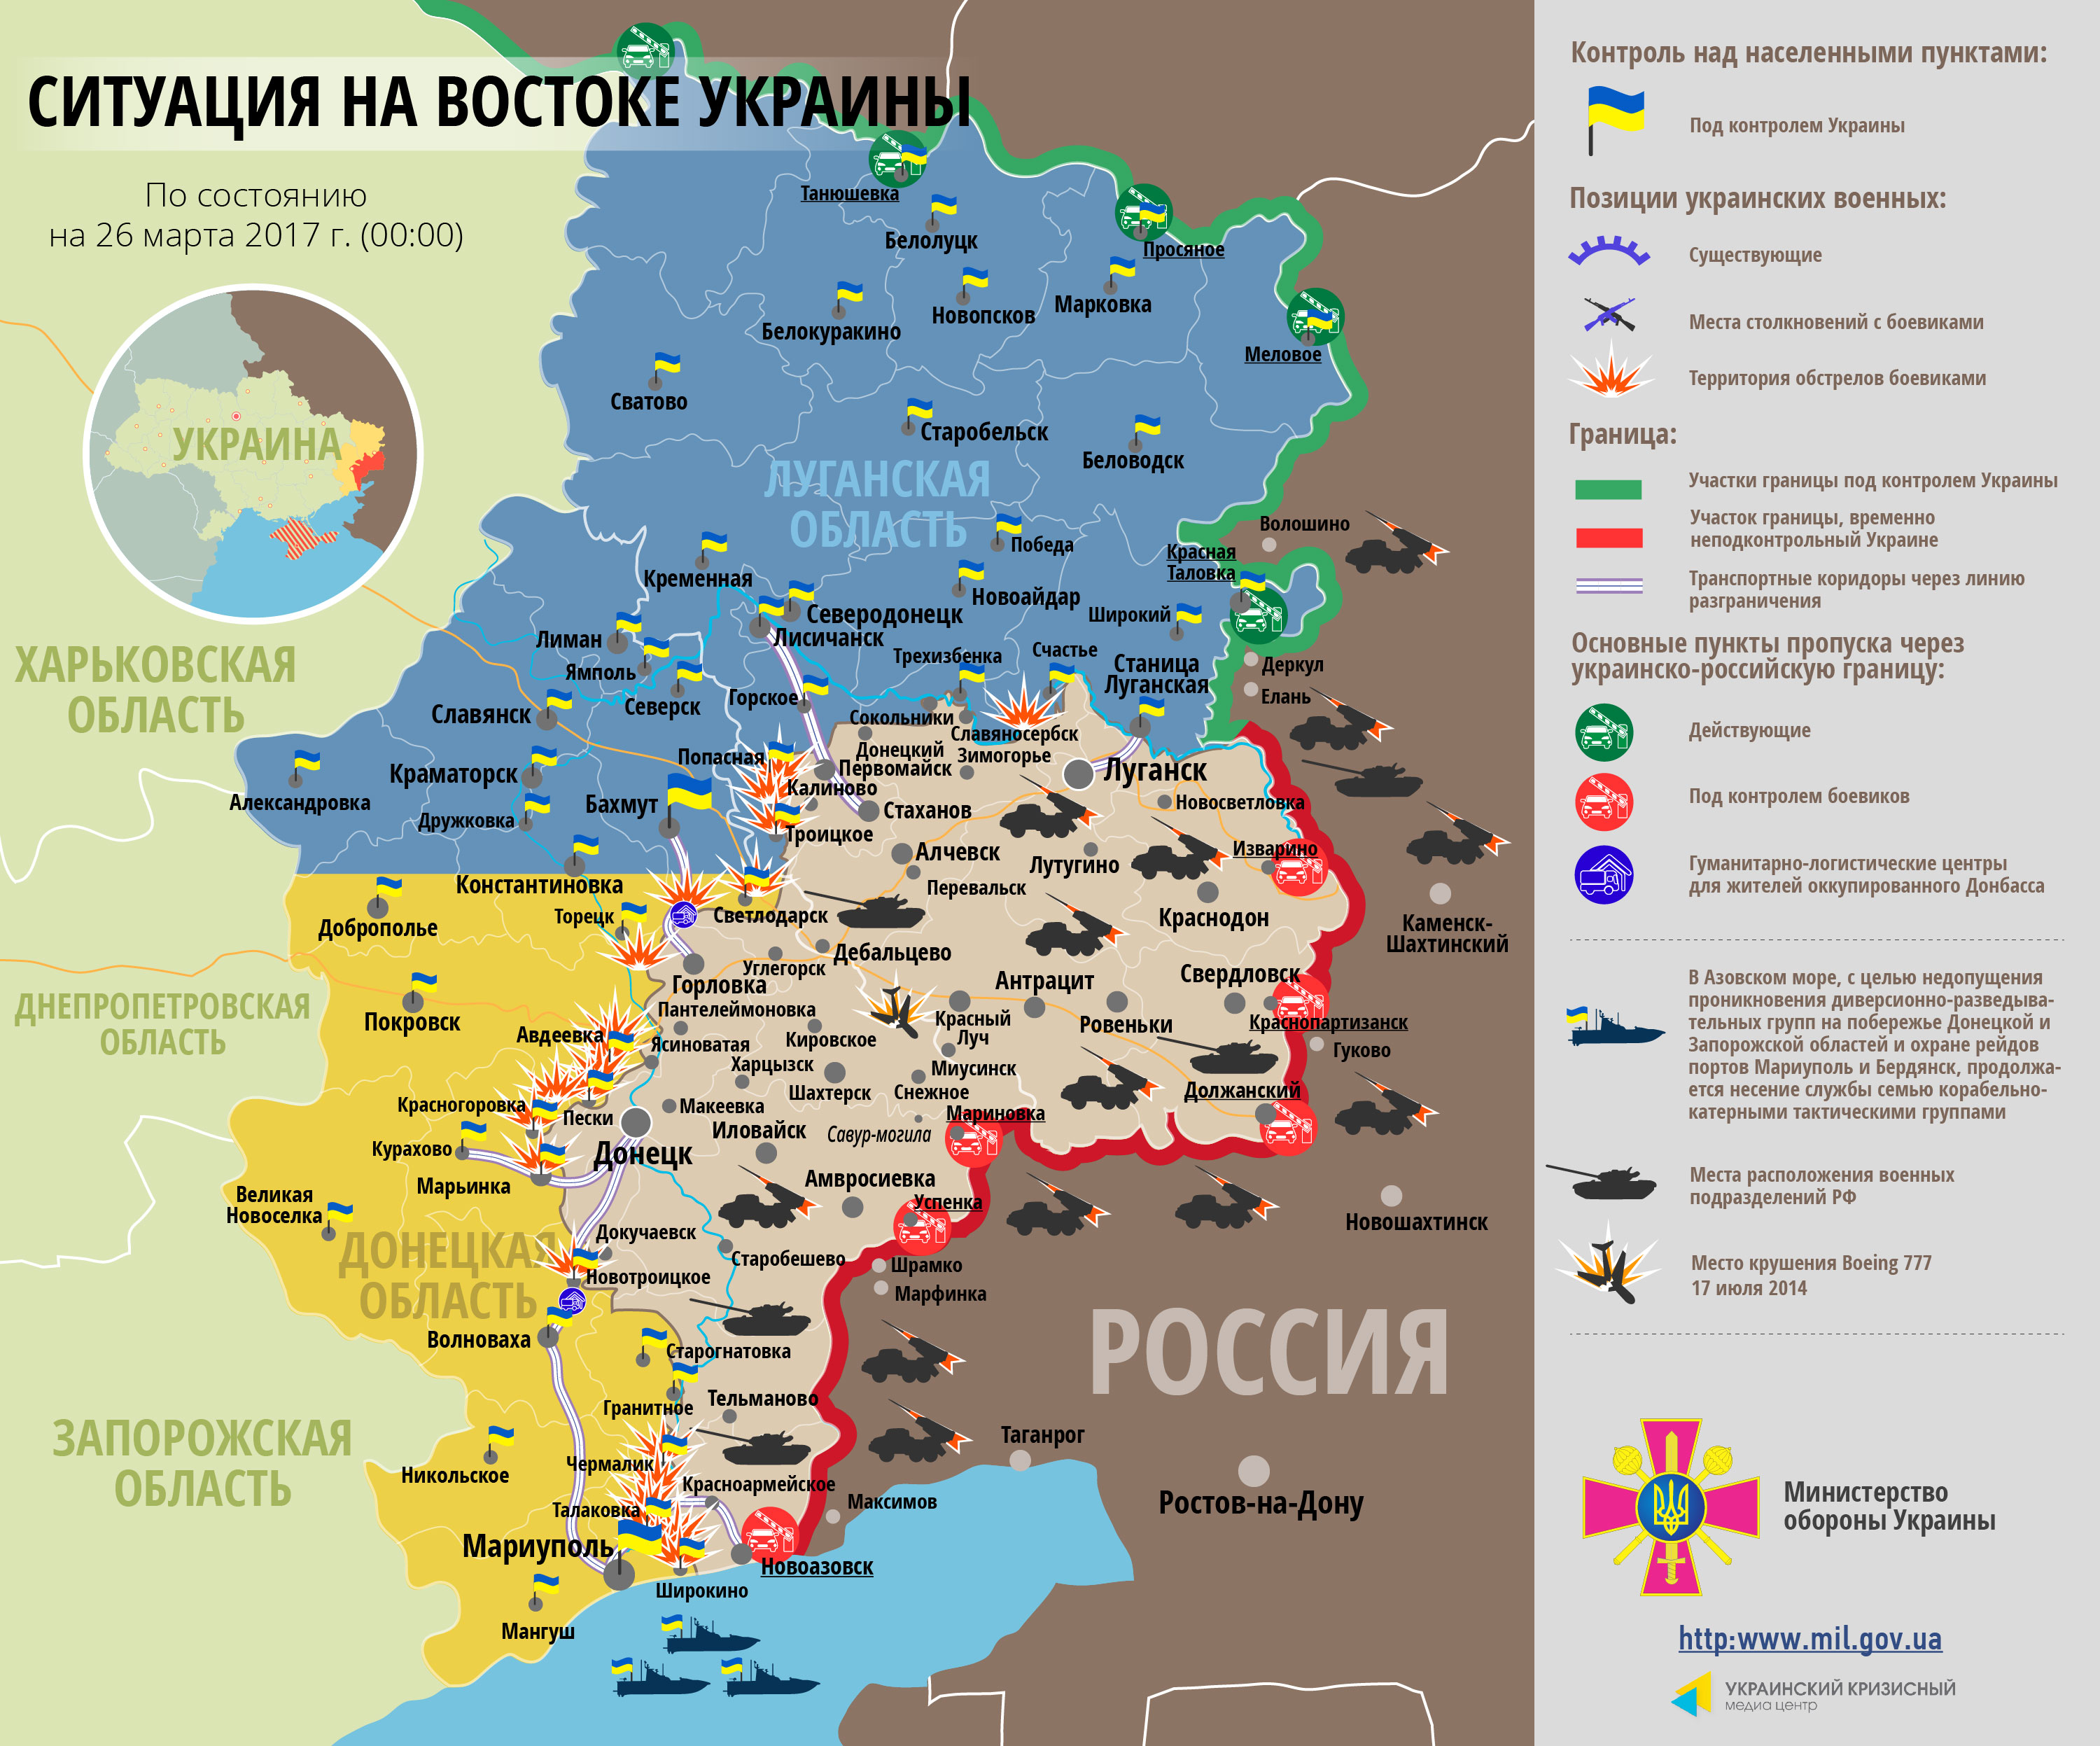 Карта АТО: расположение сил в Донбассе от 26 .03.2017, количество провокаций боевиков по всем направлениям фронта